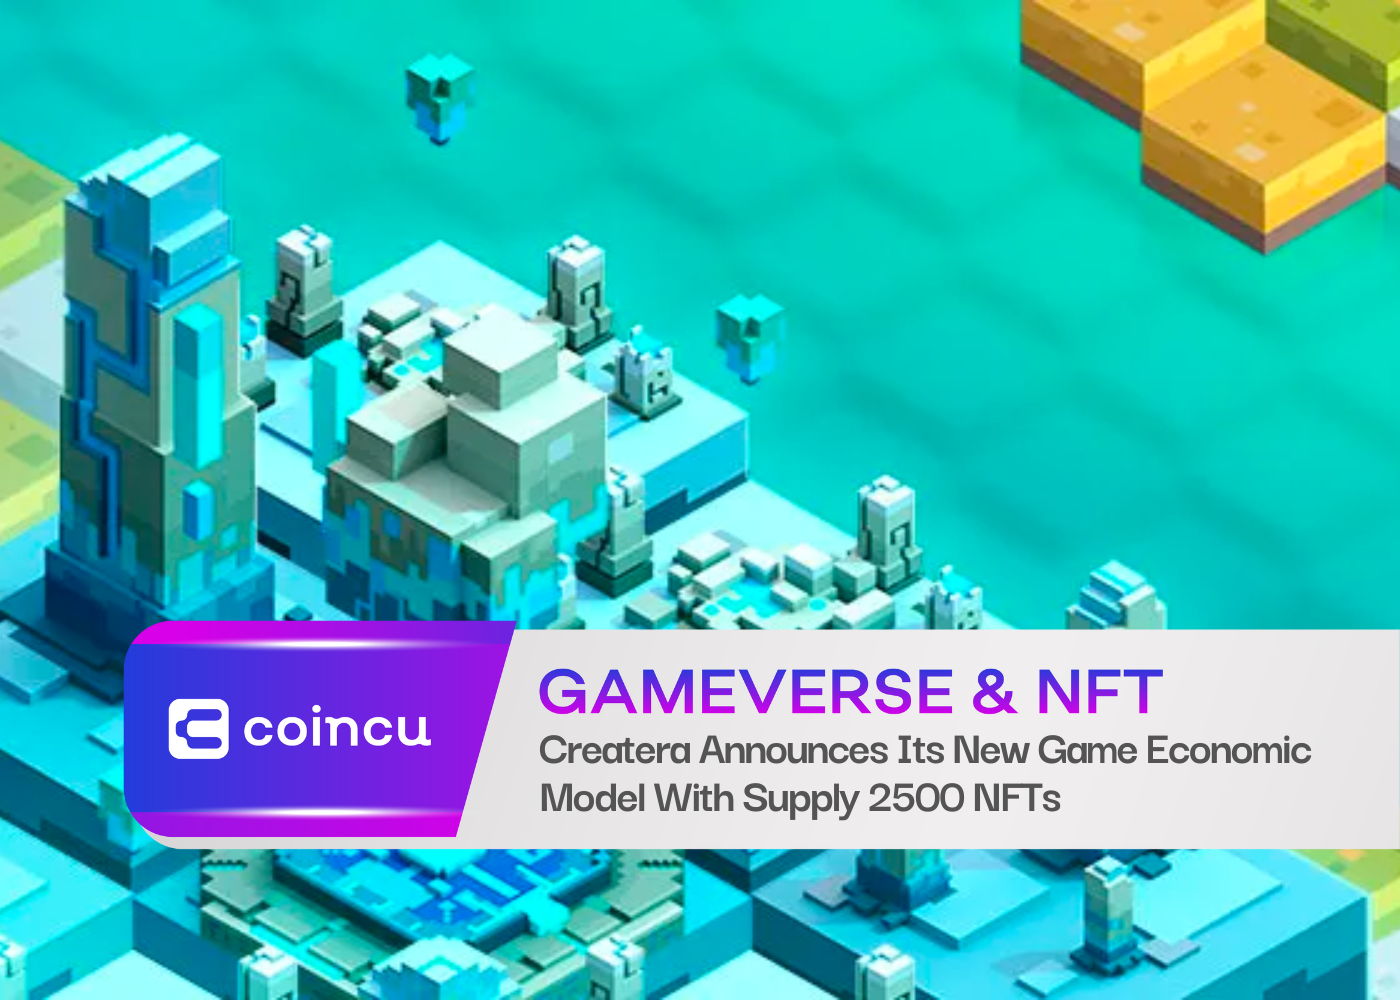 Createra công bố mô hình kinh tế trò chơi mới với nguồn cung 2500 NFT